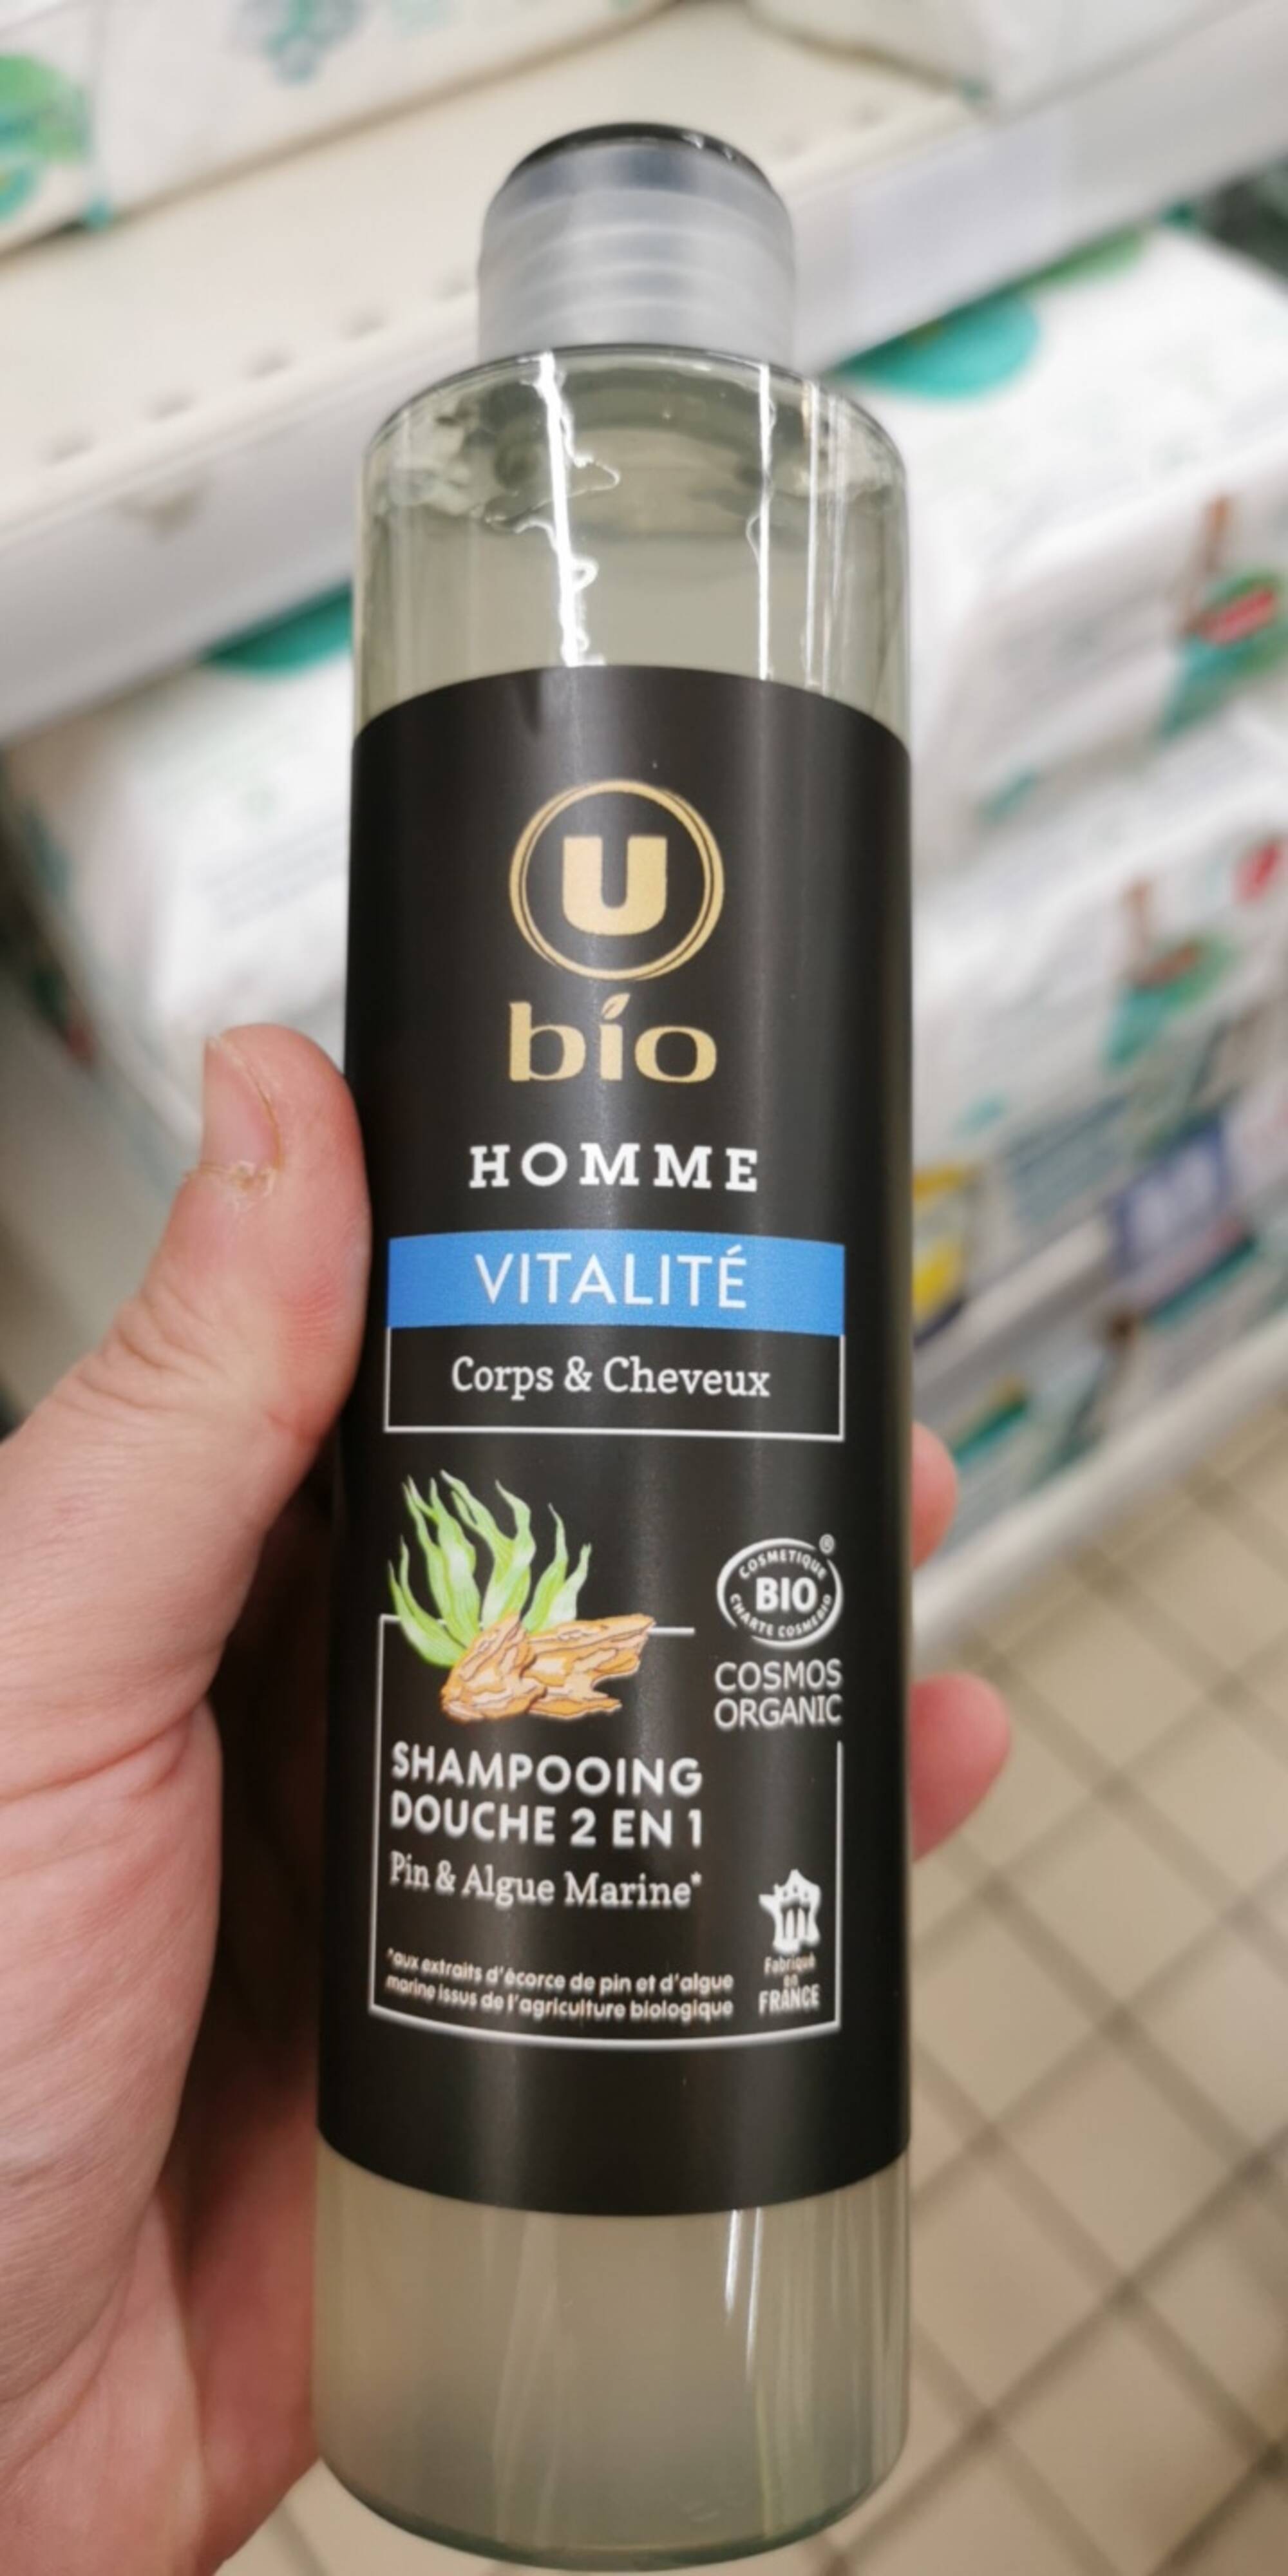 U - Bio Homme vitalité - Shampooing douche 2 en 1